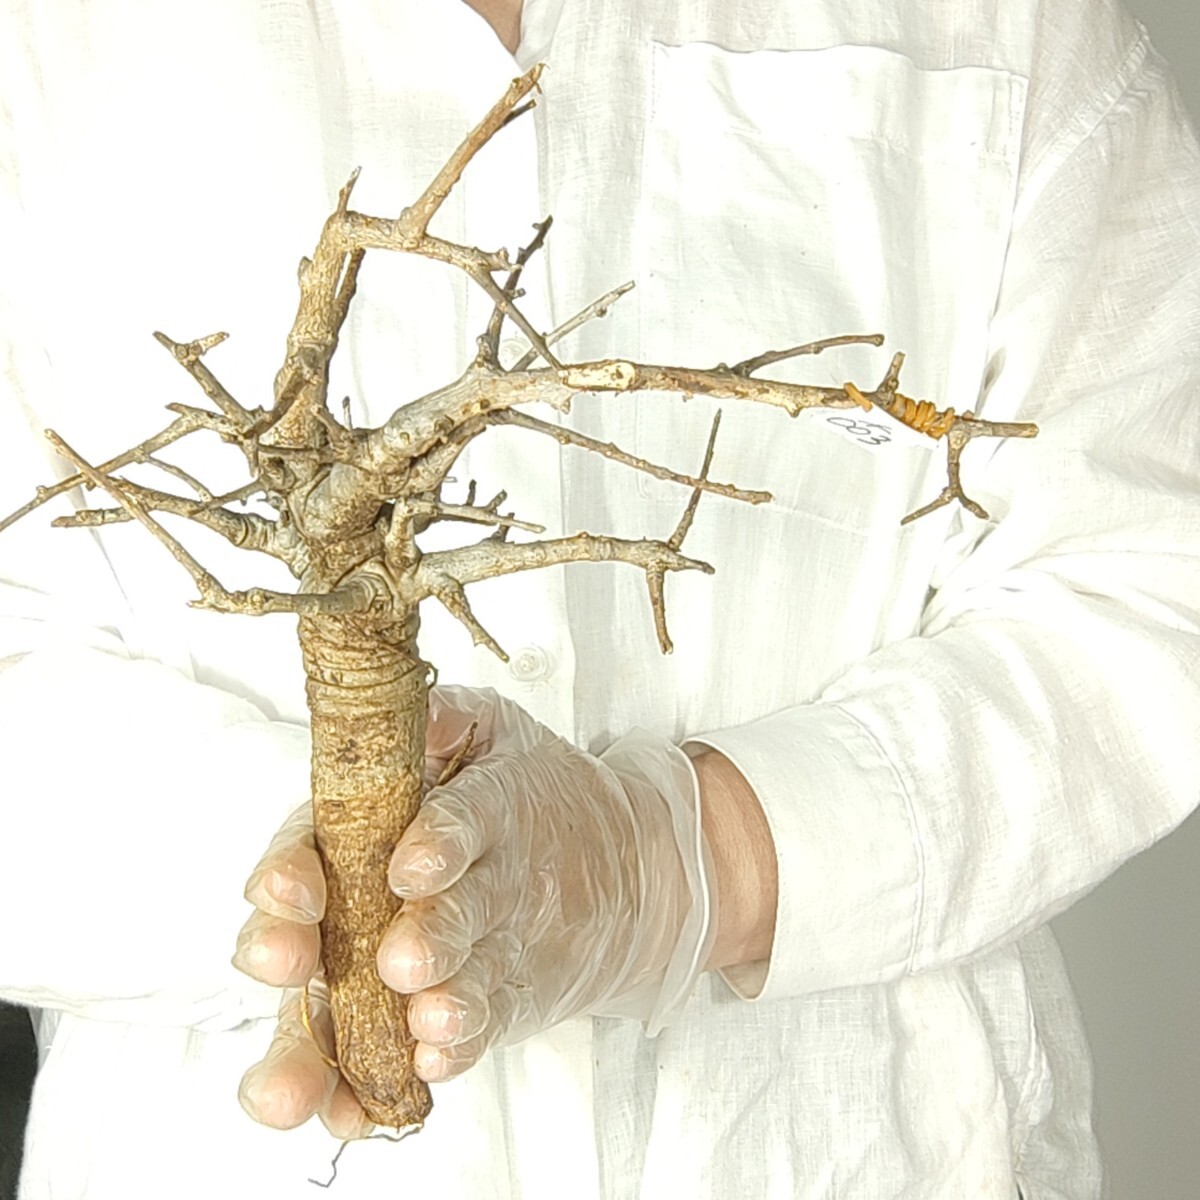 ネグレクタ ネ003 ボスウェリア・ネグレクタ 塊根植物 観葉植物 未発根 多肉植物 灌木 パキプス グラキリス 盆栽 アガベ コーデックスの画像3